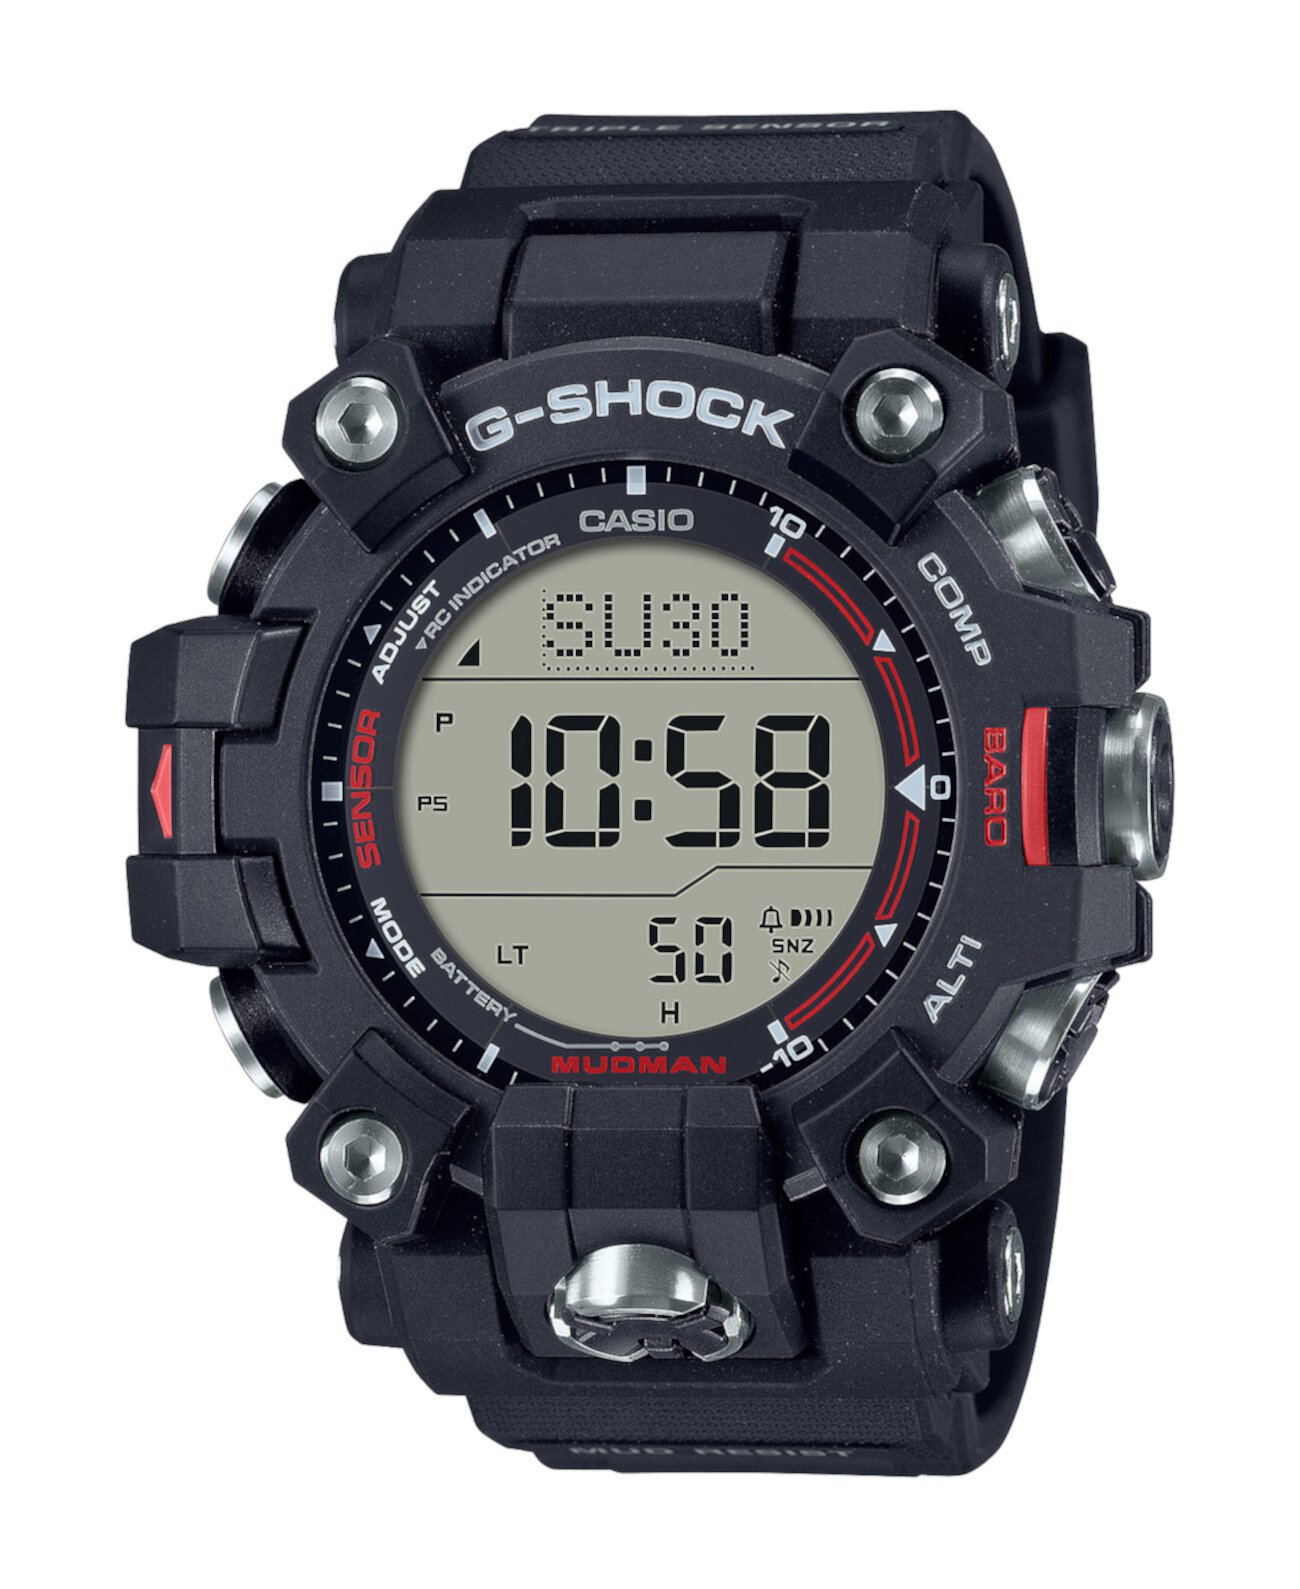 Мужские цифровые часы из черной смолы, 52,7 мм, GW9500-1 G-Shock